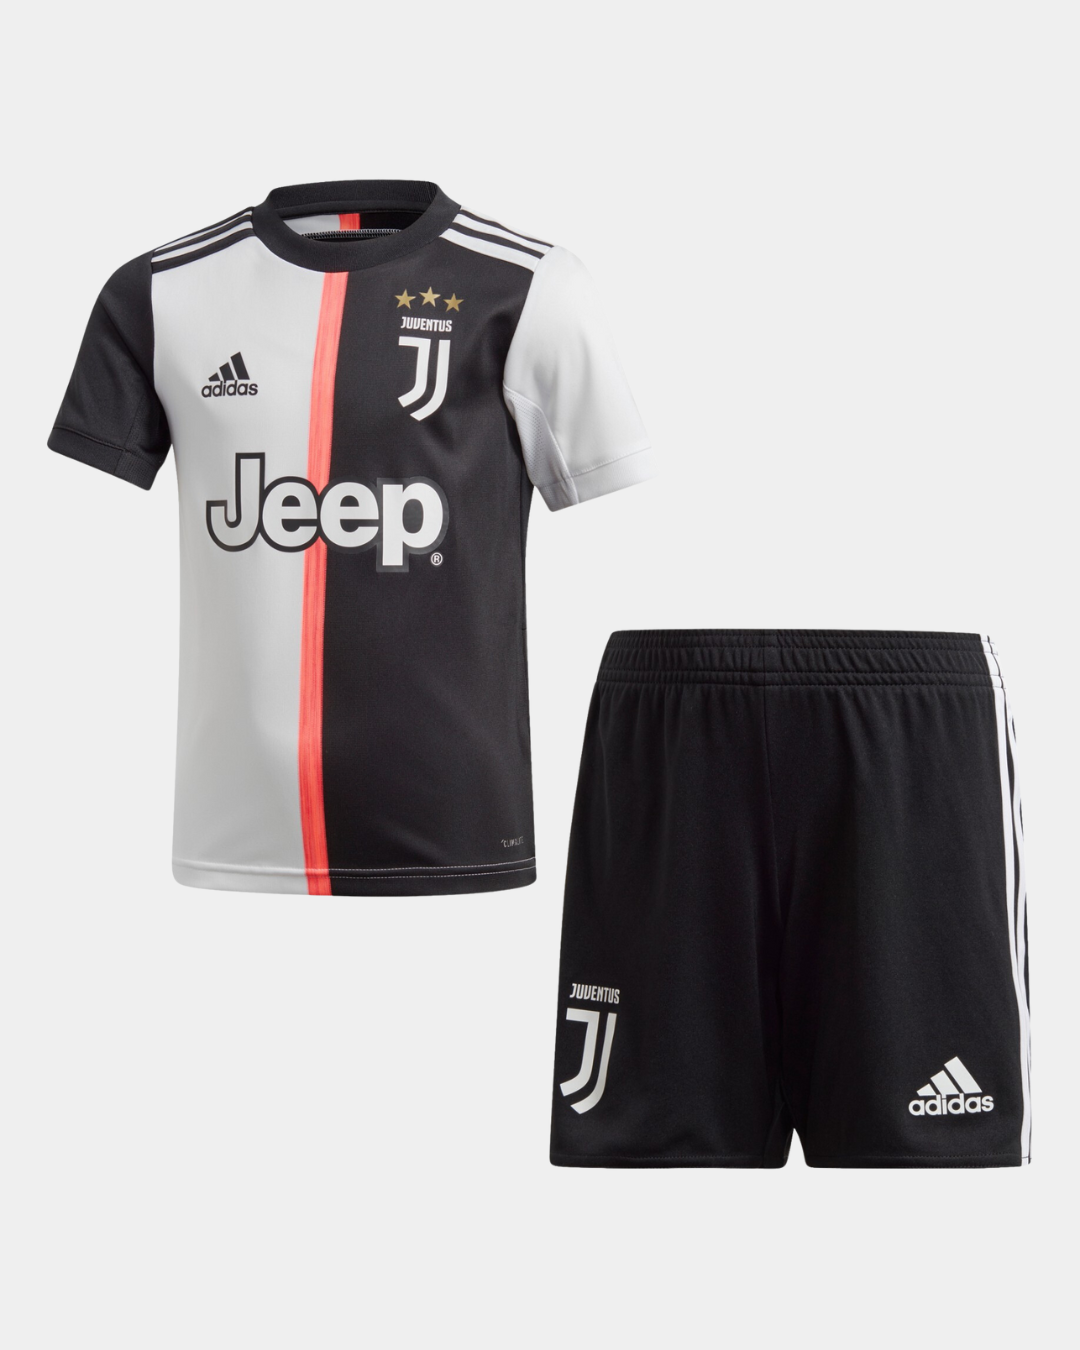 Juventus Kids Kit 2019/2020 - Black/White/Pink